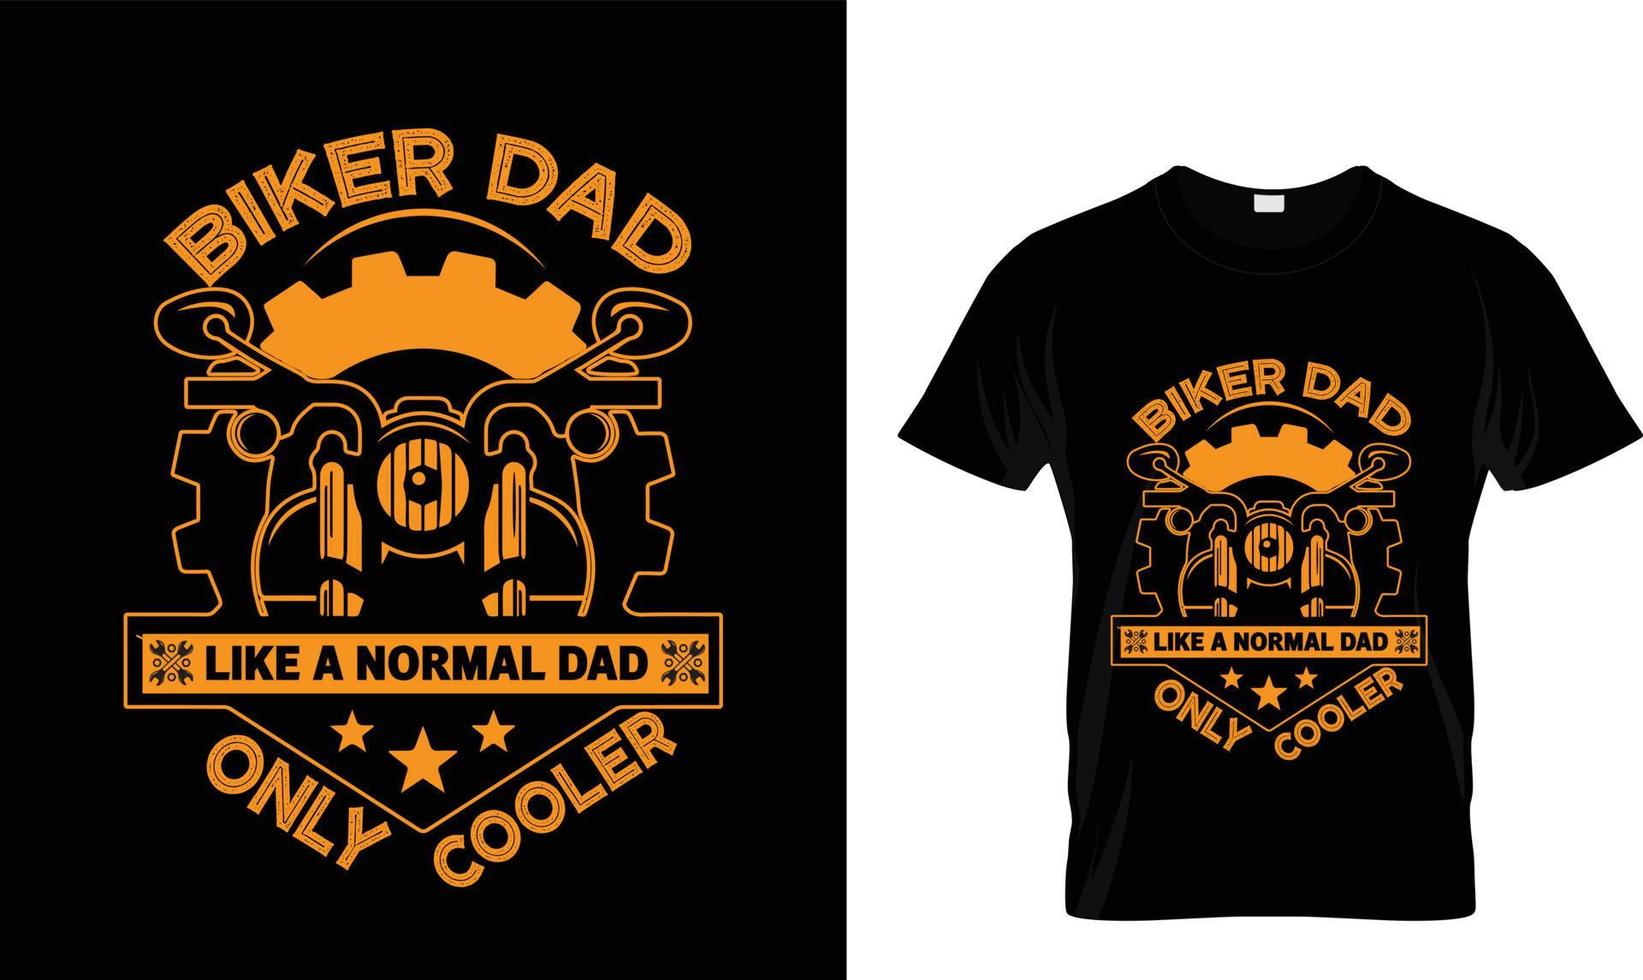 motociclista papà piace un' normale papà solo collera maglietta design vettore